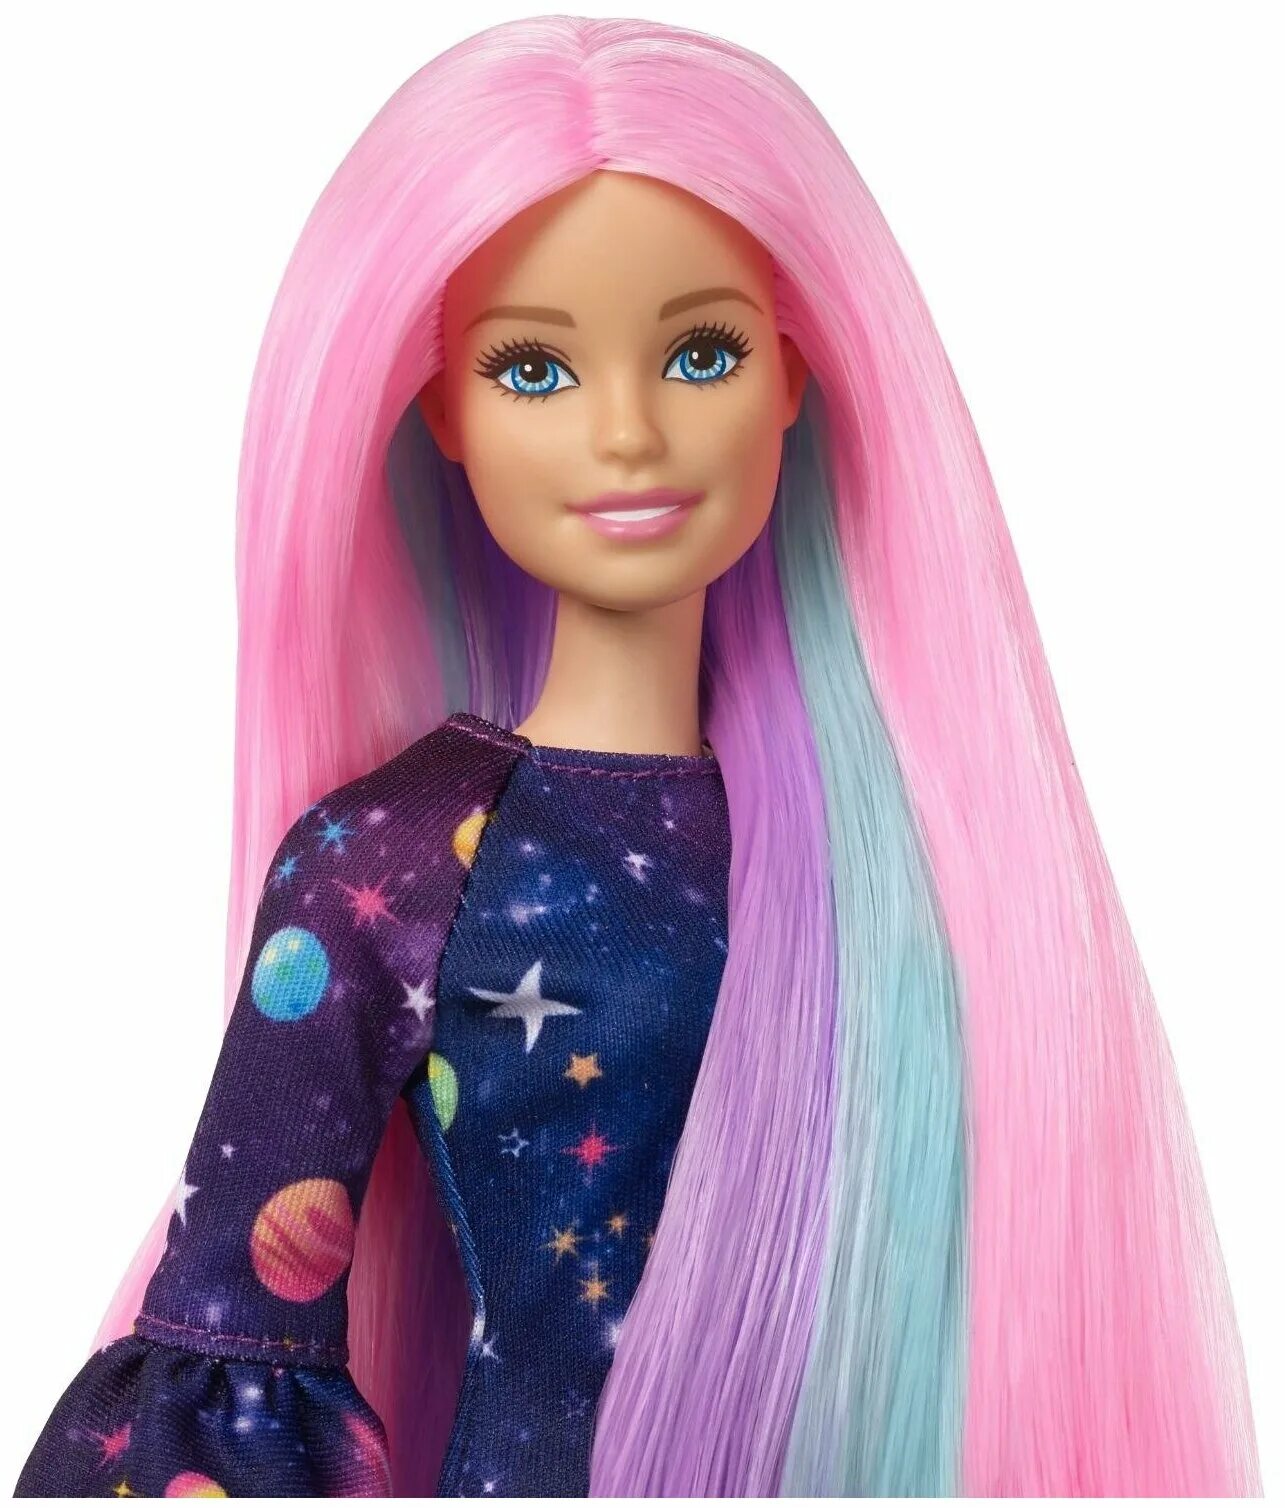 Заказать куколки. Кукла Barbie цветной сюрприз с розовыми волосами, fhx00. Кукла Барби цветной сюрприз с розовыми волосами. Кукла Mattel Barbie с разноцветными волосами, grn81.